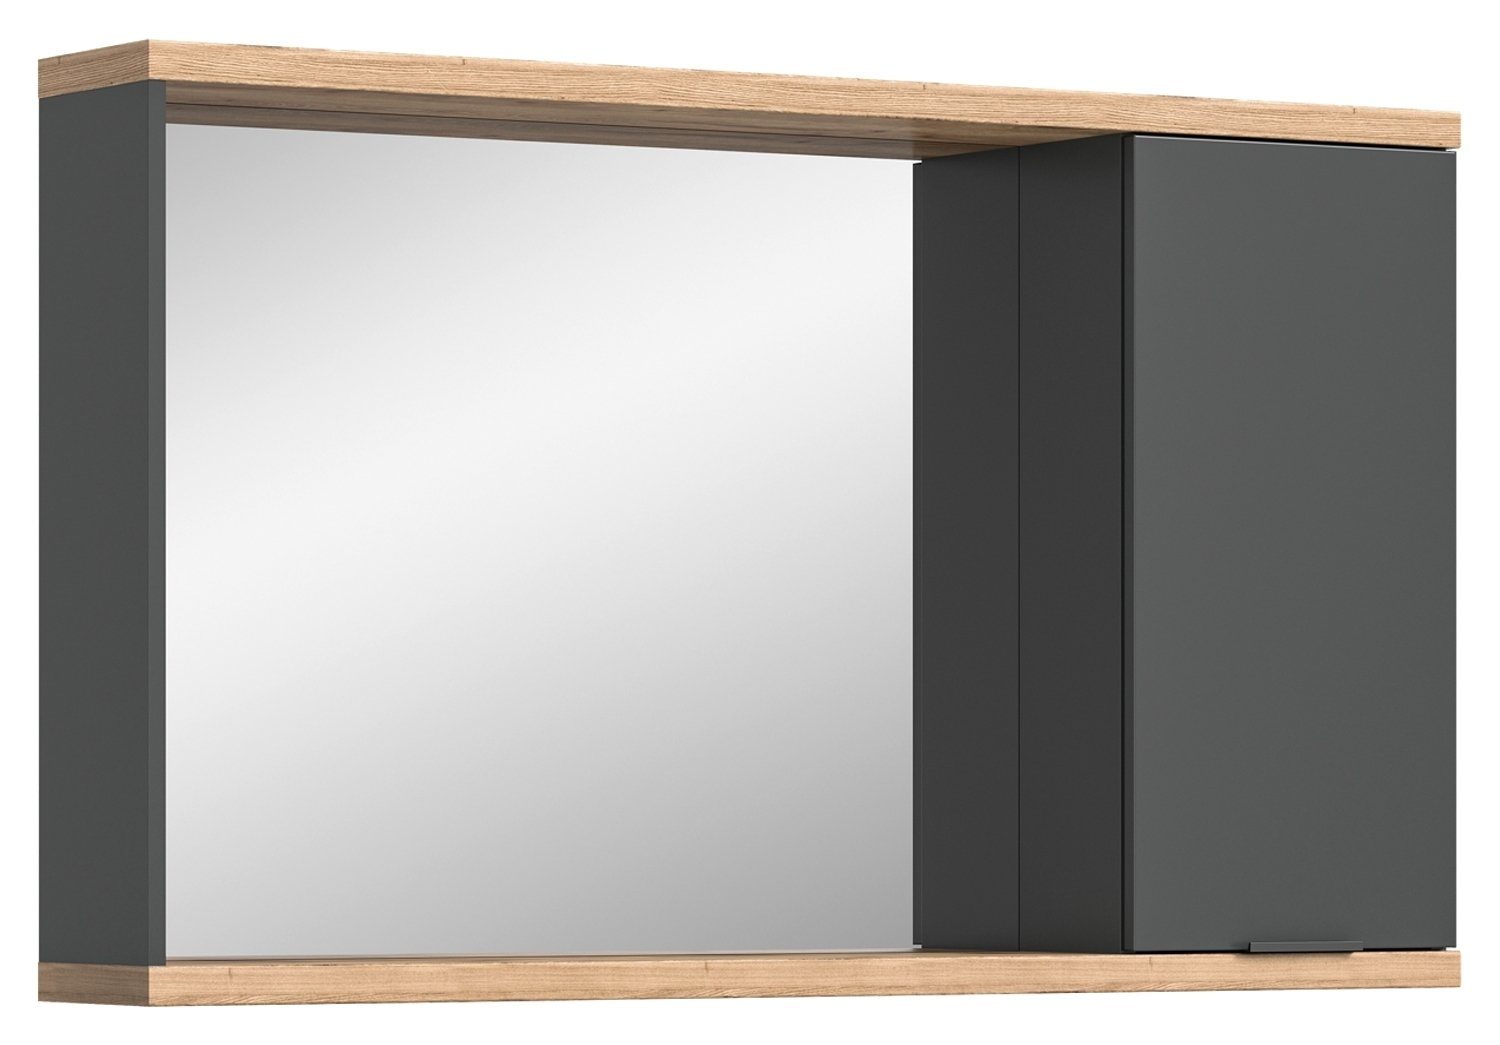 xonox.home Spiegelschrank NUARO, mit Spiegel, Anthrazit, Nox Eiche Dekor, 1 Tür, B 130 x H 77 x T 20 cm, Badmöbel